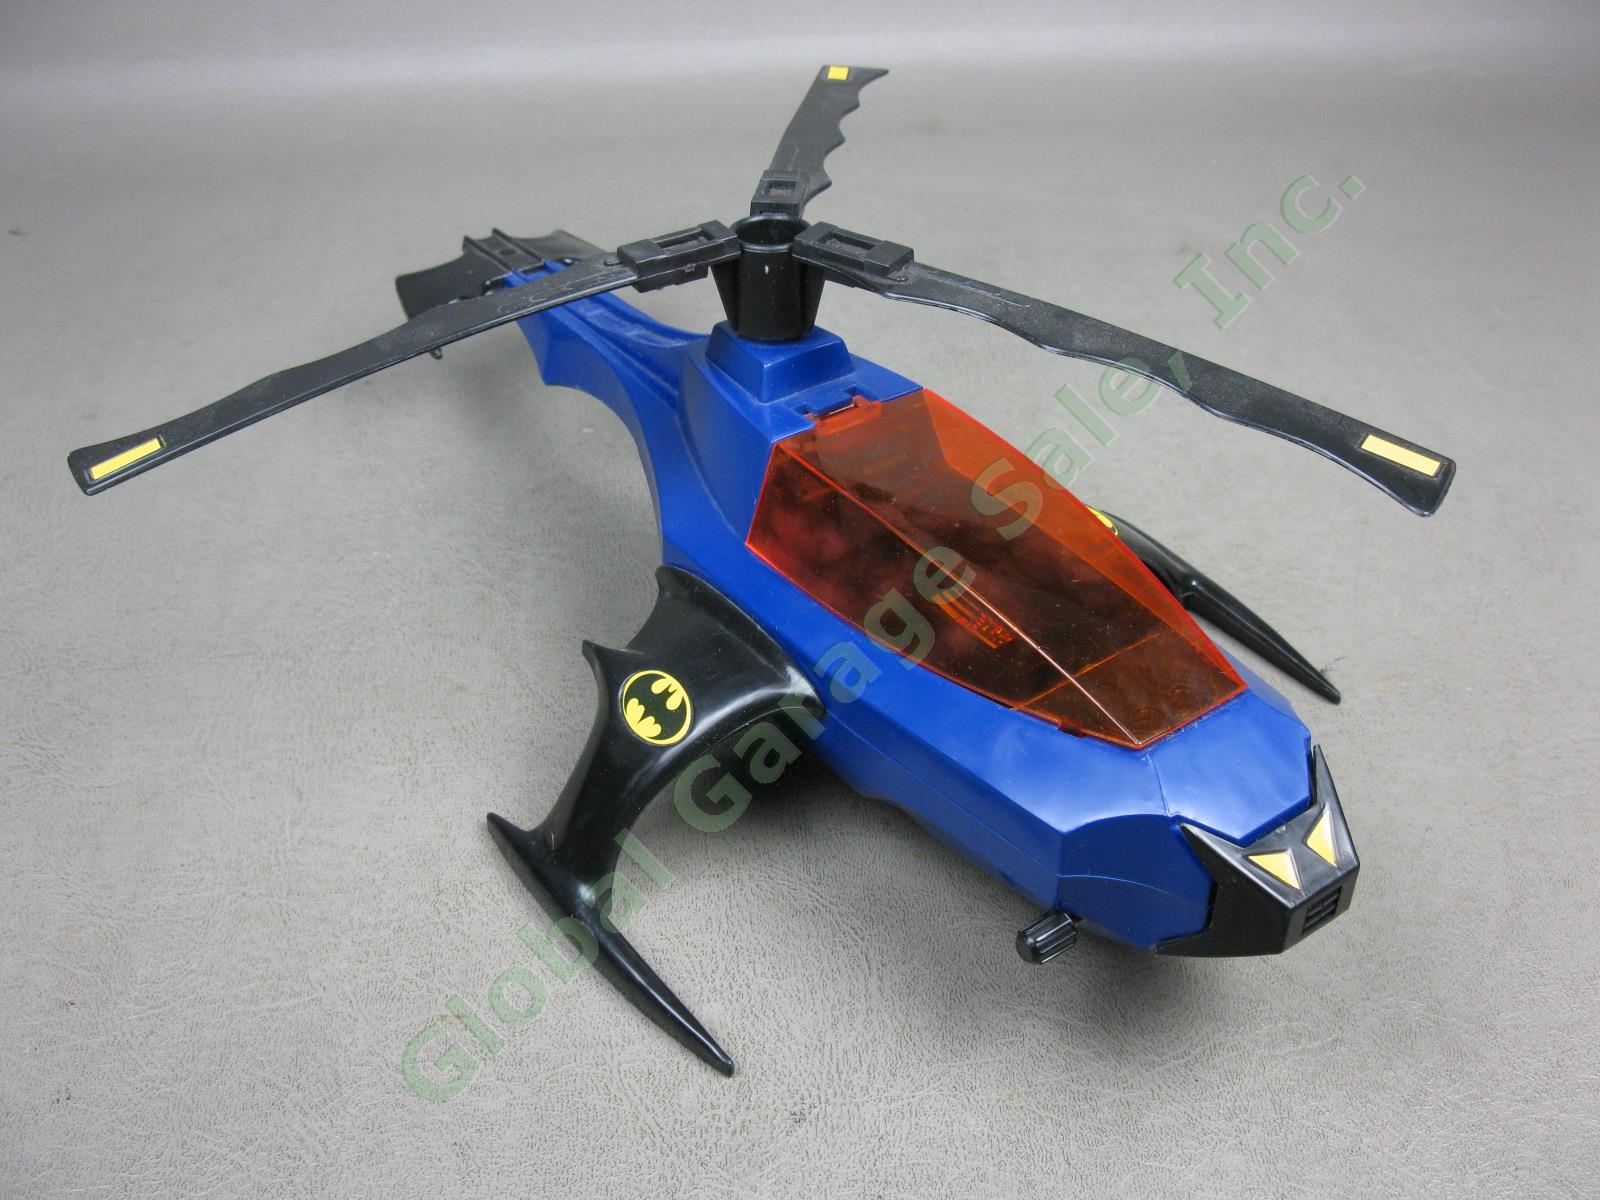 1986 Kenner Super Powers DC Comics Batman Batcopter Air-Pursuit Chopper Vehicle 1